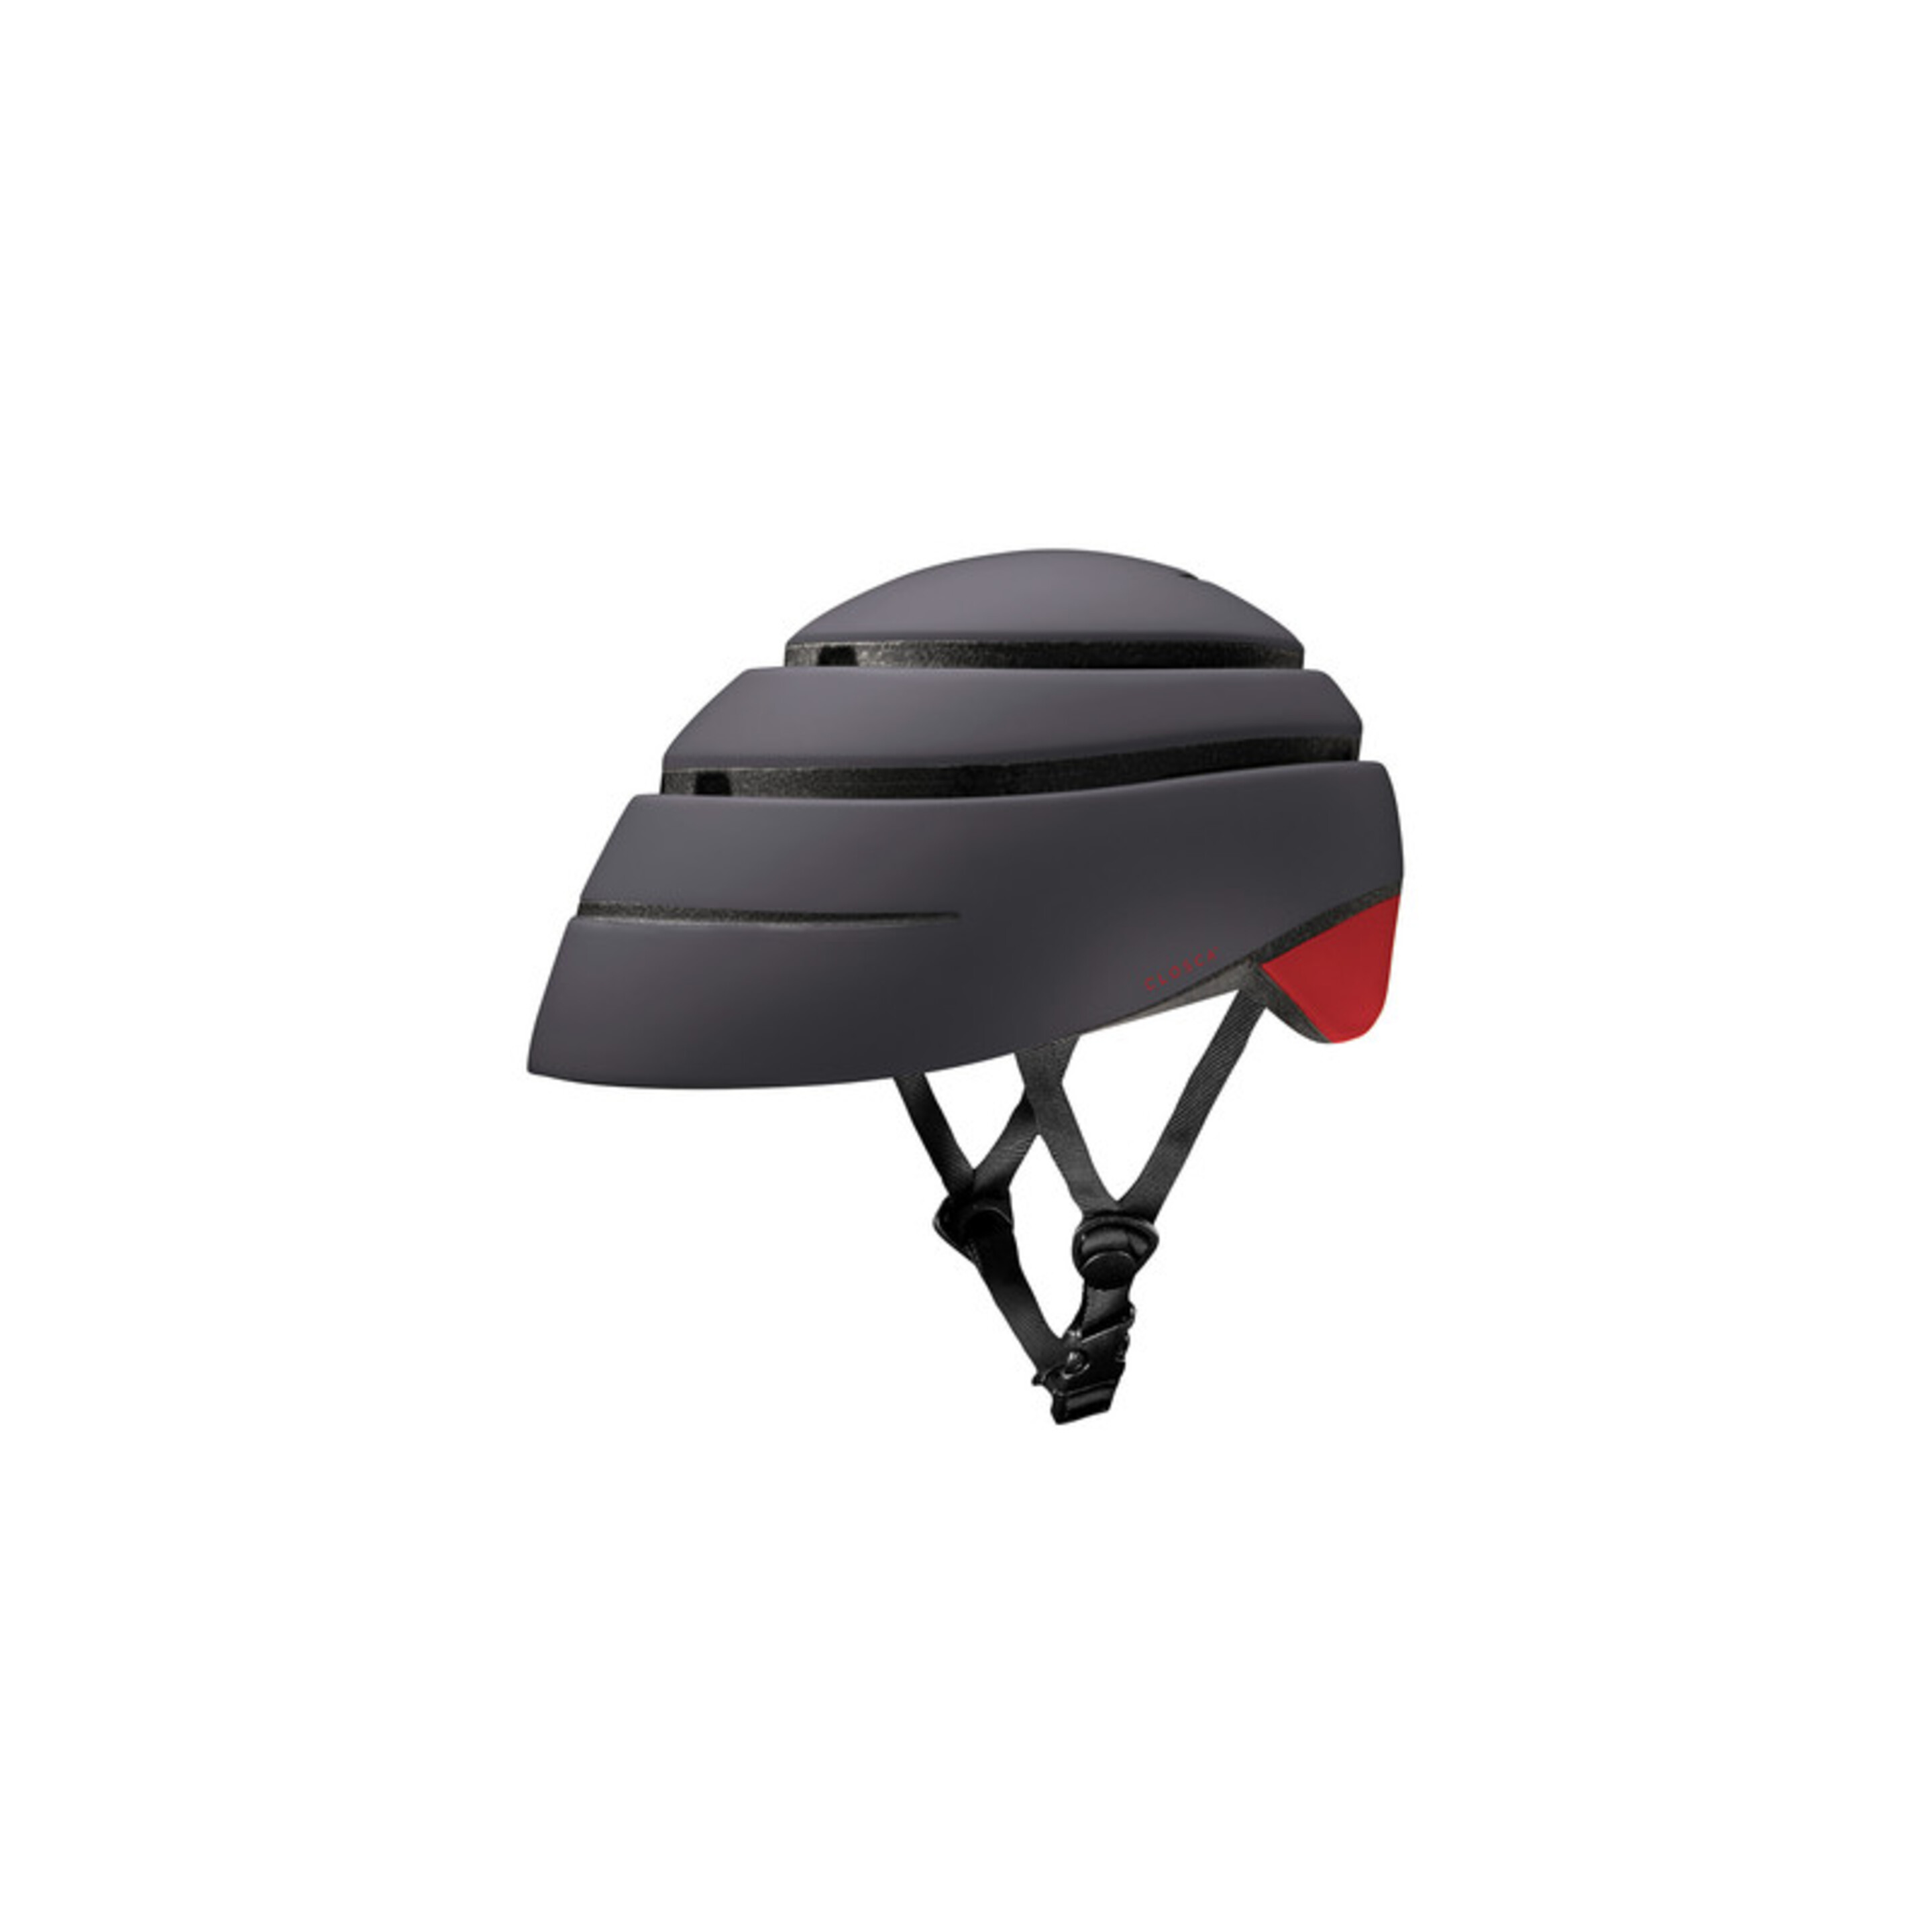 Casco De Bicicleta Plegable Closca Graphite - Negro/Rojo - Seguro, Plegable Y Estilo Urbano.  MKP